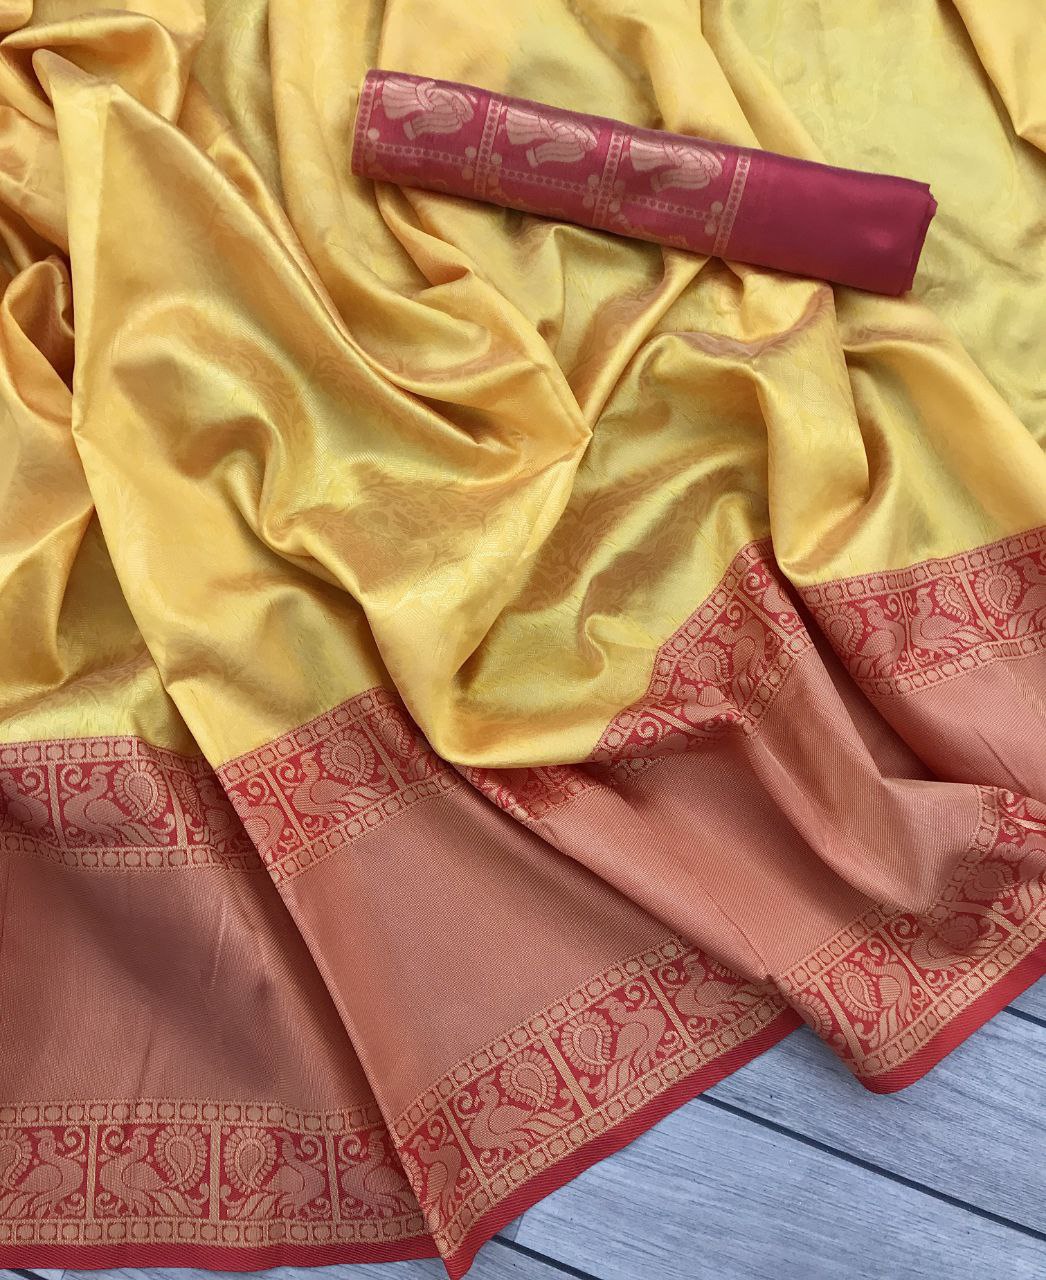 Orange Wedding Wear Saree In Silk For Women